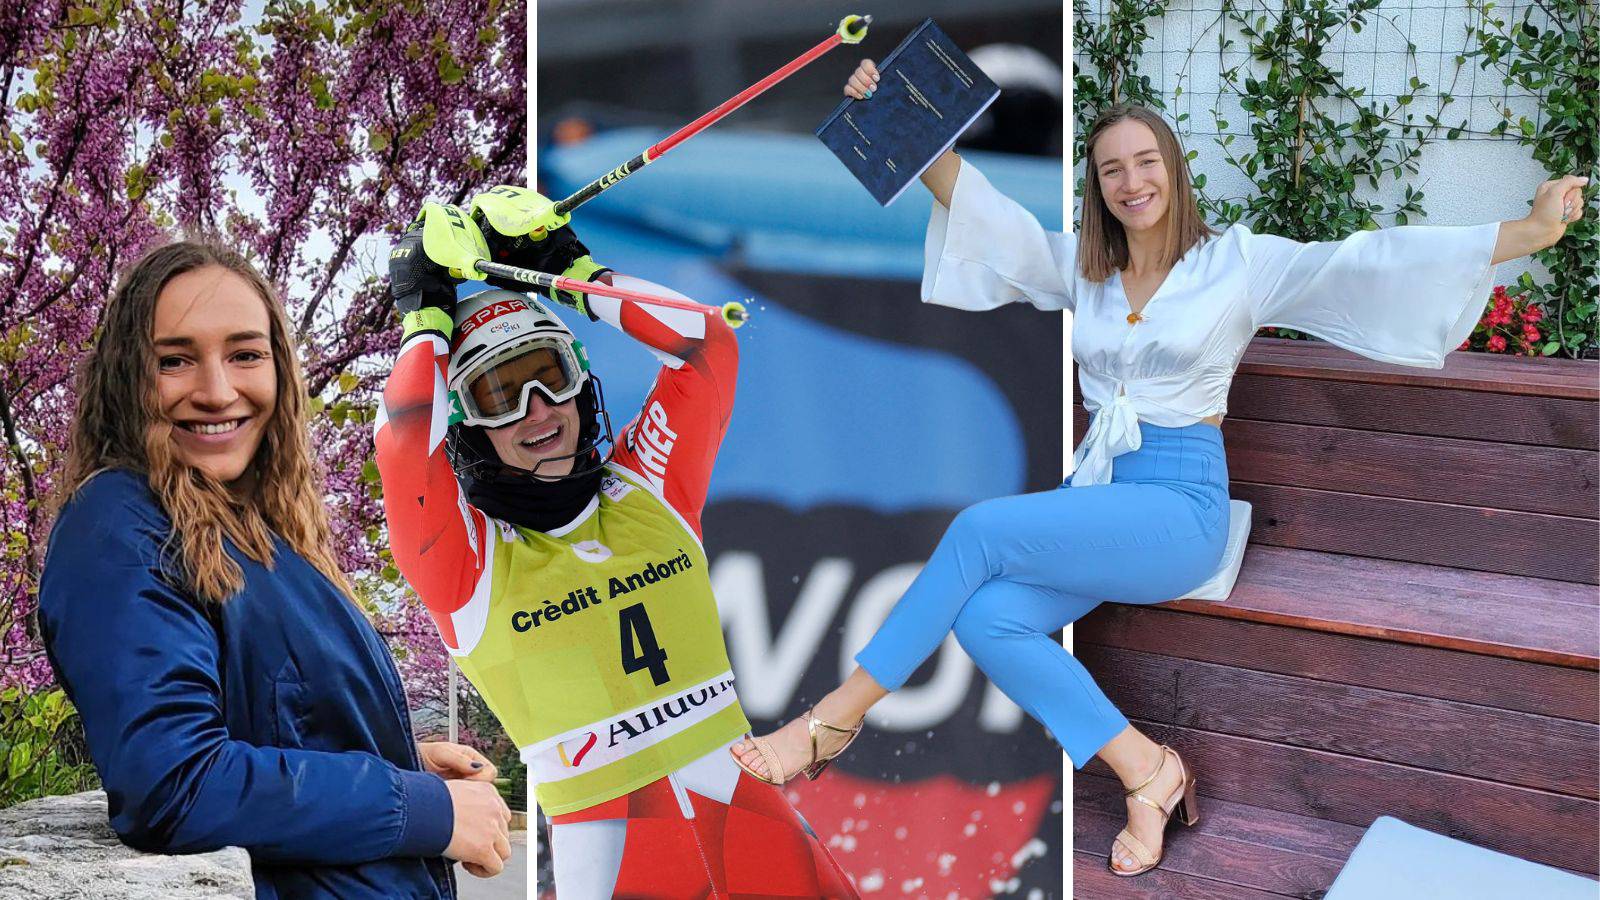 Tko je Leona Popović, Hrvatica koja juriša na skijaški vrh? 'Uoči utrka uvijek imam isti doručak'